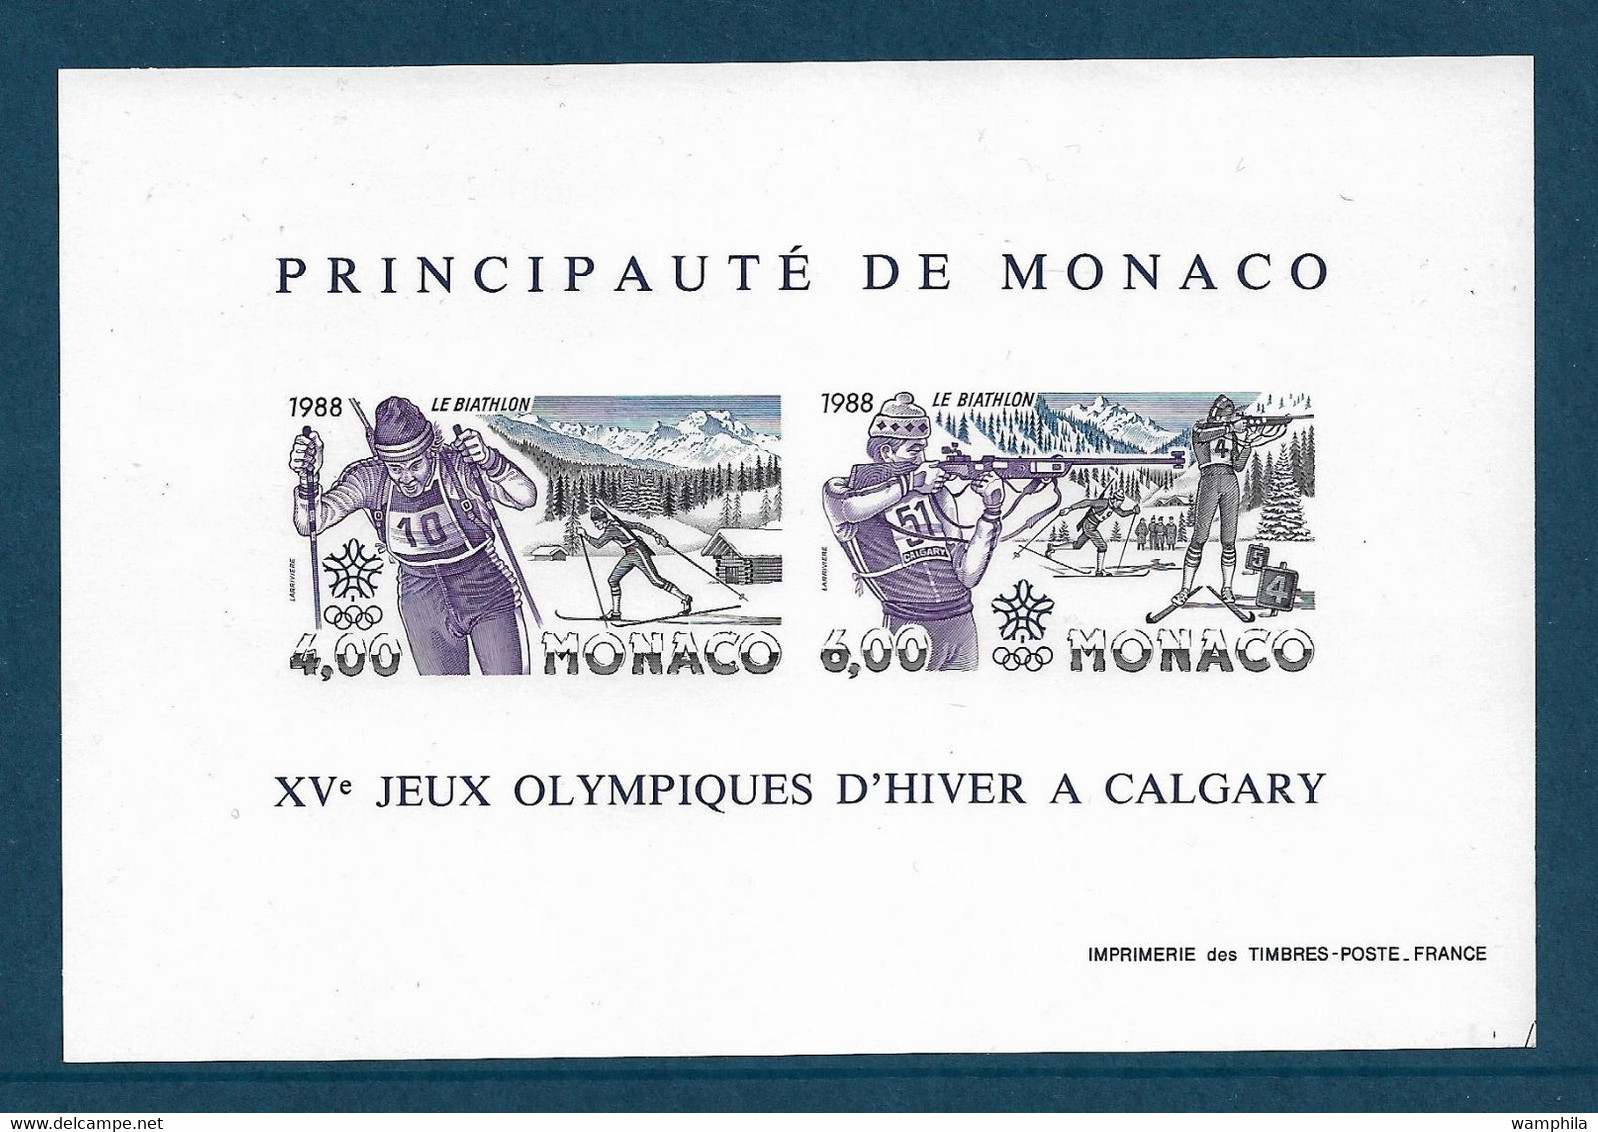 Monaco Bloc Gommé N°40a** Des Timbres N°1621/1622 Non Dentelé, Jeux Olympique Tir Et Ski Cote 310€ - Inverno1988: Calgary